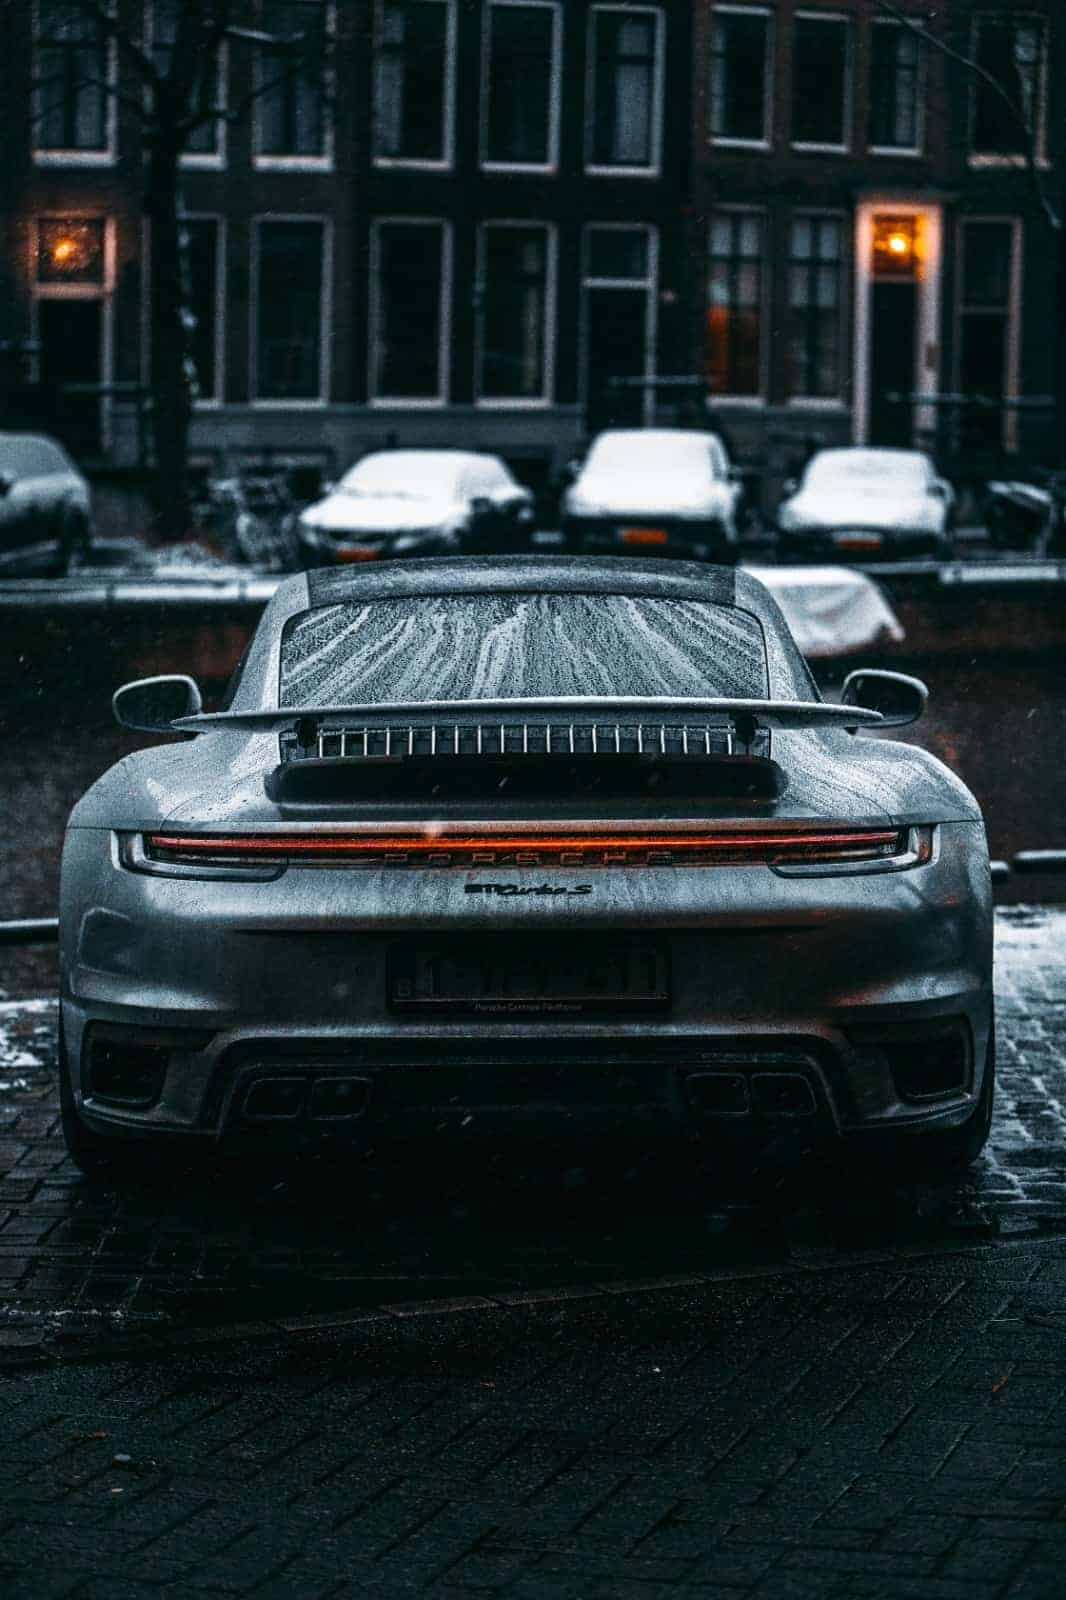 Porsche sports cars